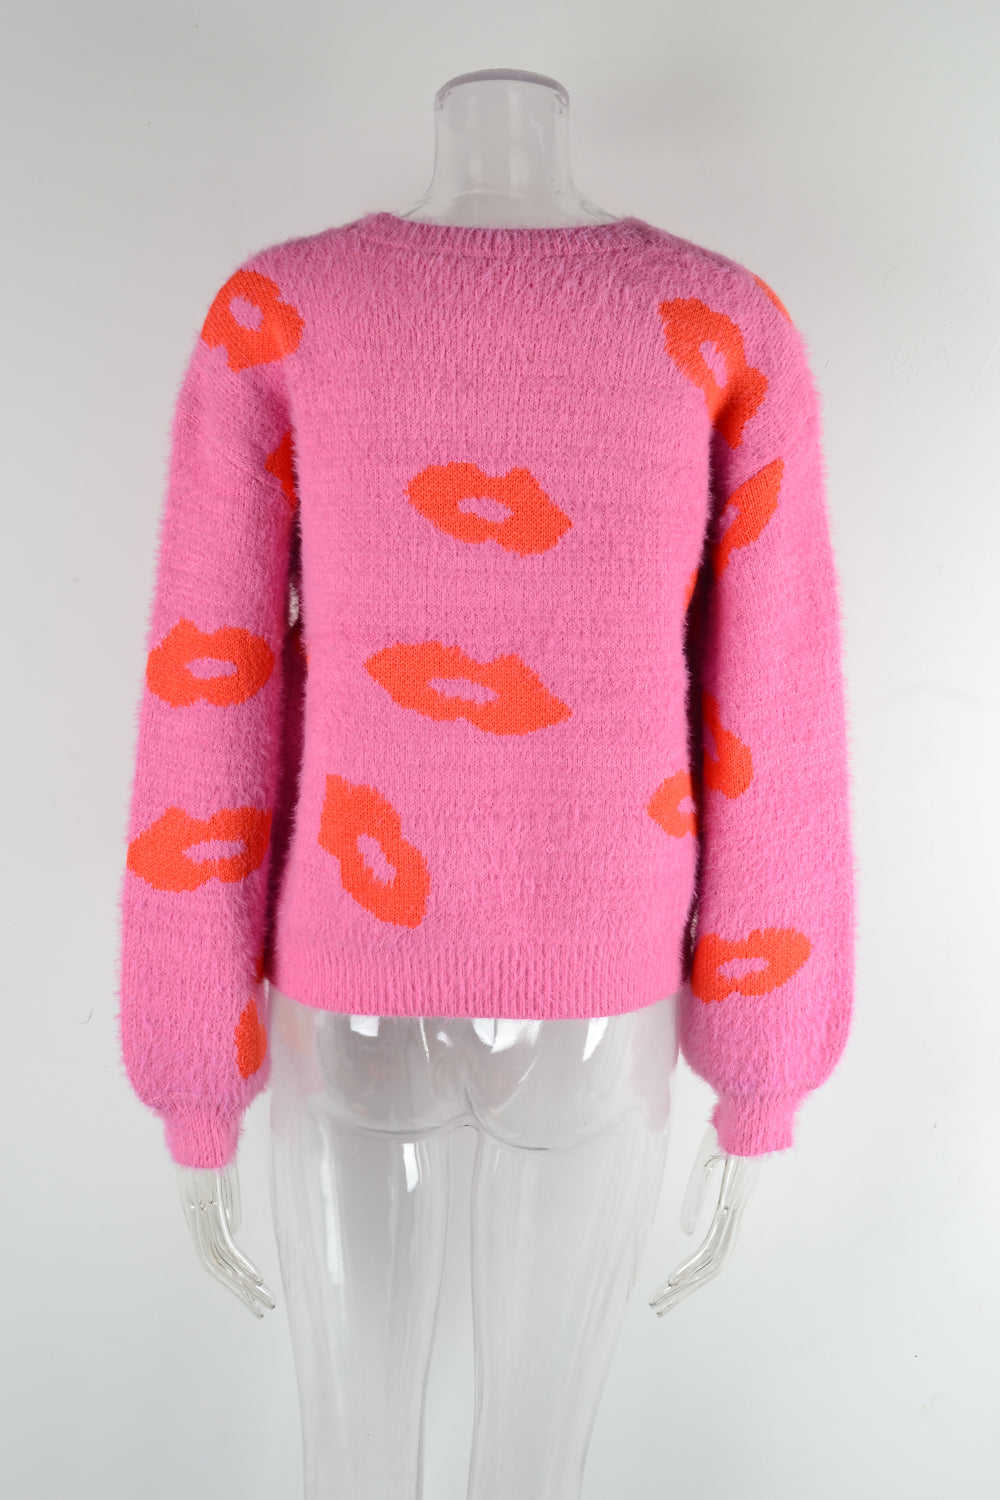 Autumn Winter Women Lips Valentine Day Sweater Round Neck Pullover Love Sweater